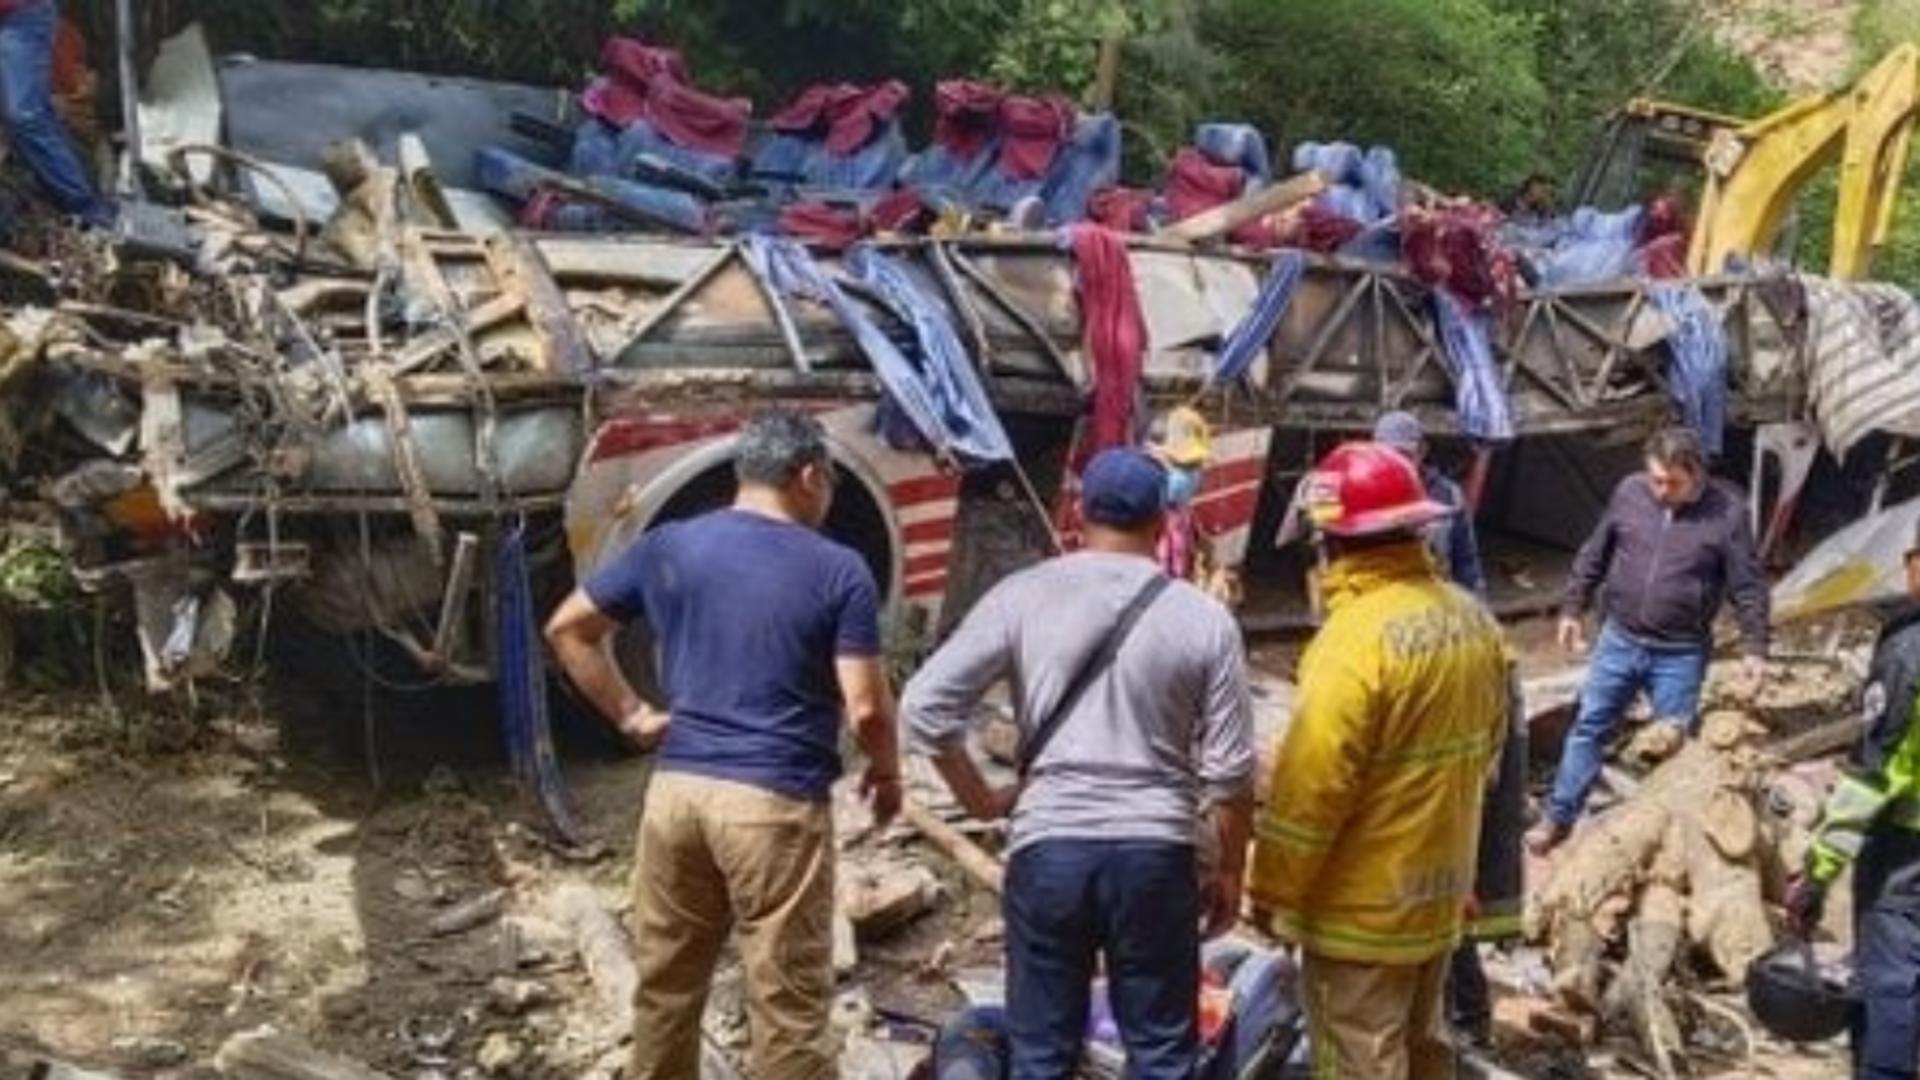 Tragedie în Mexic după un accident teribil - Un autobuz s-a prăbușit într-o râpă: 27 de oameni, inclusiv un copil, au murit pe loc